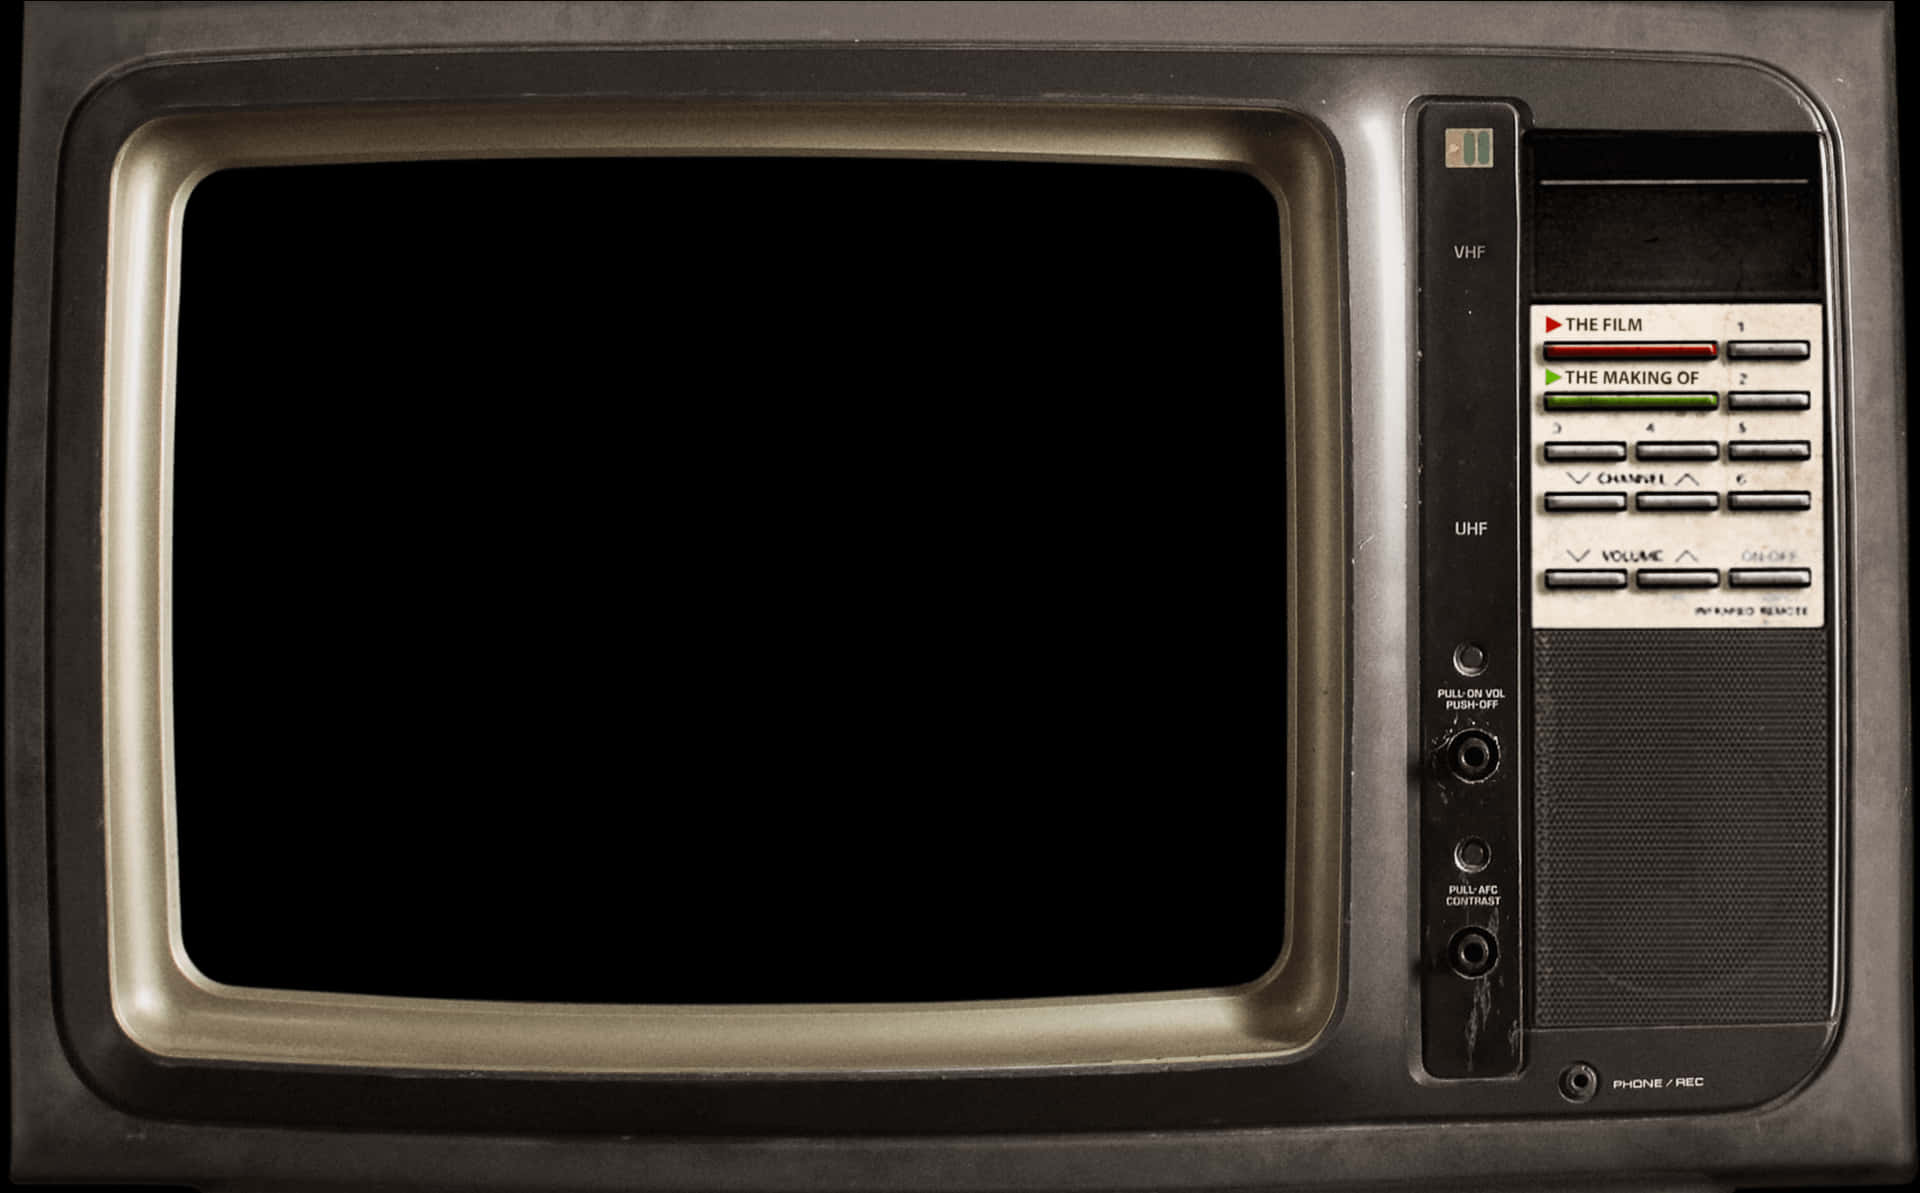 Vintage Television Set PNG